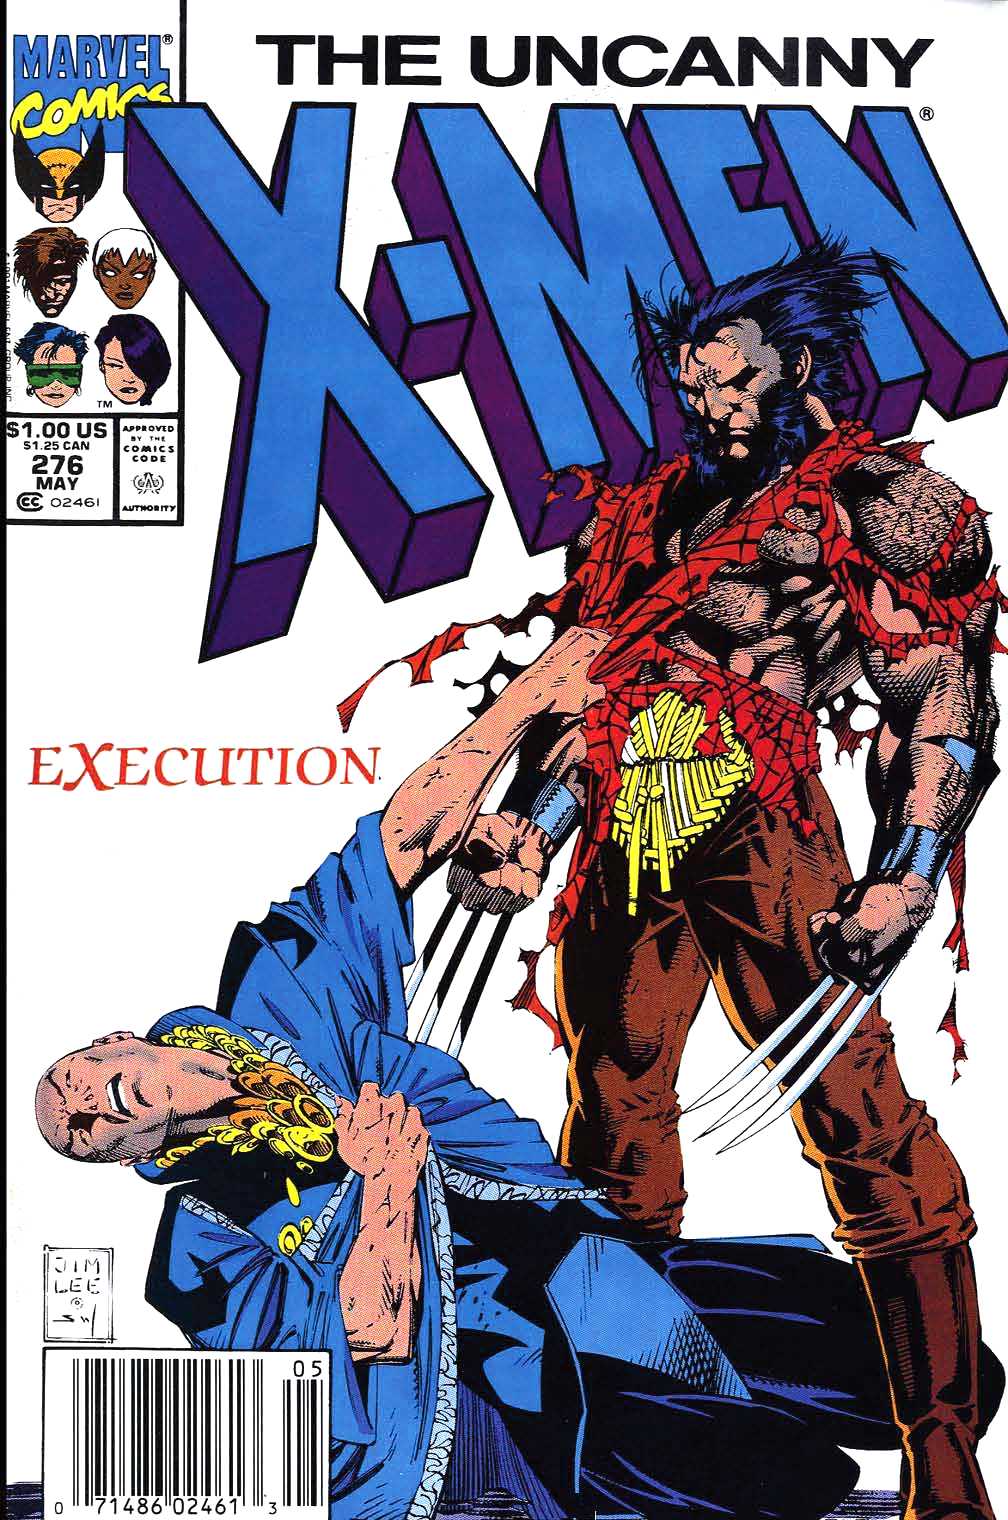 Amazing Uncanny X-Men Pictures & Backgrounds